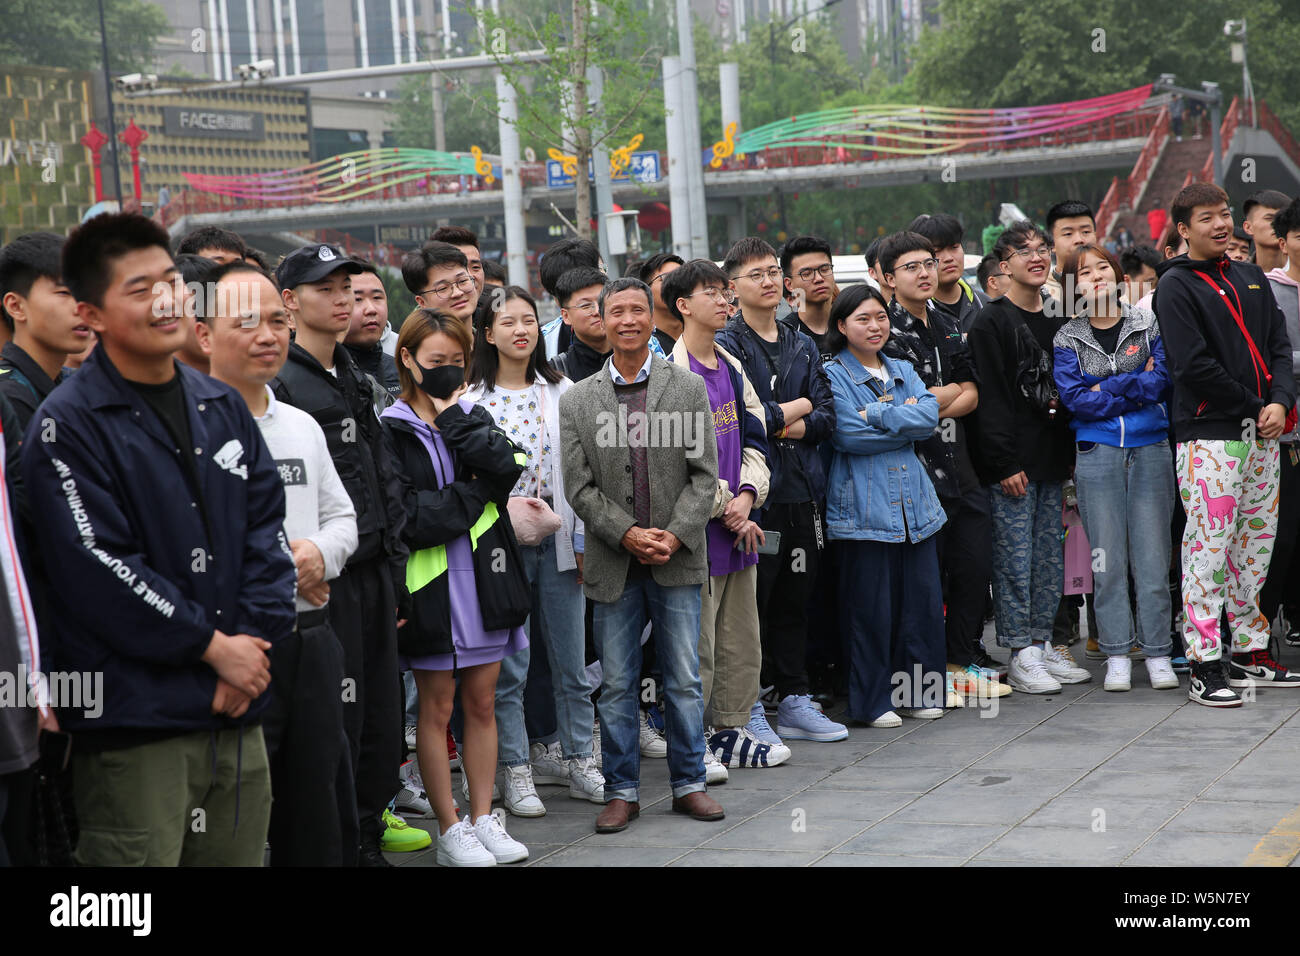 Los jóvenes compradores chinos cola frente de una tienda de deportiva Nike para comprar de edición limitada en la ciudad de Xi'an, en el noroeste de la provincia